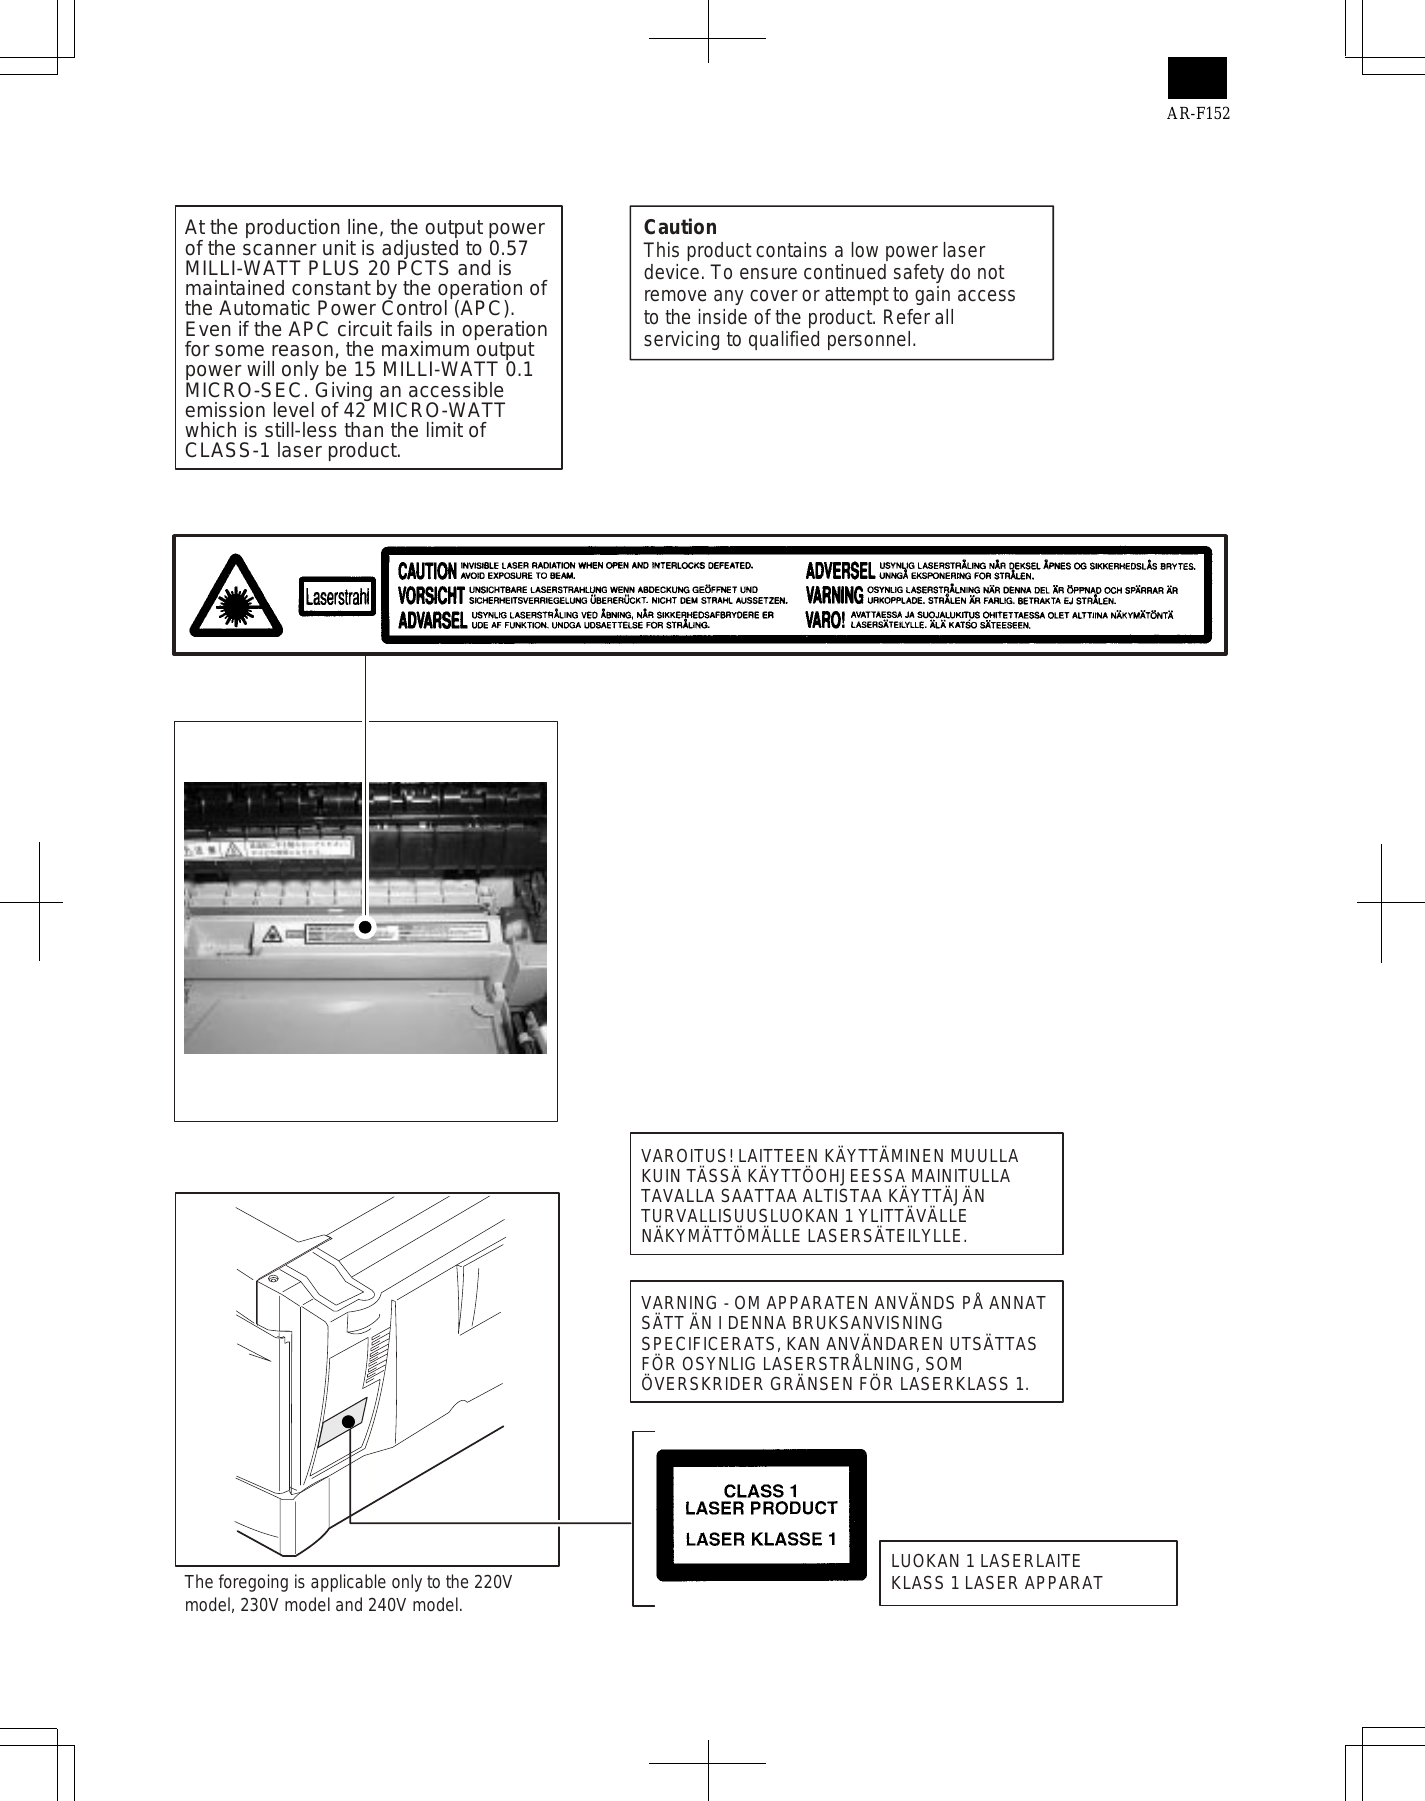 Sharp AR 151, AR 156, AR F152 printer/copier service guide Preview image 4